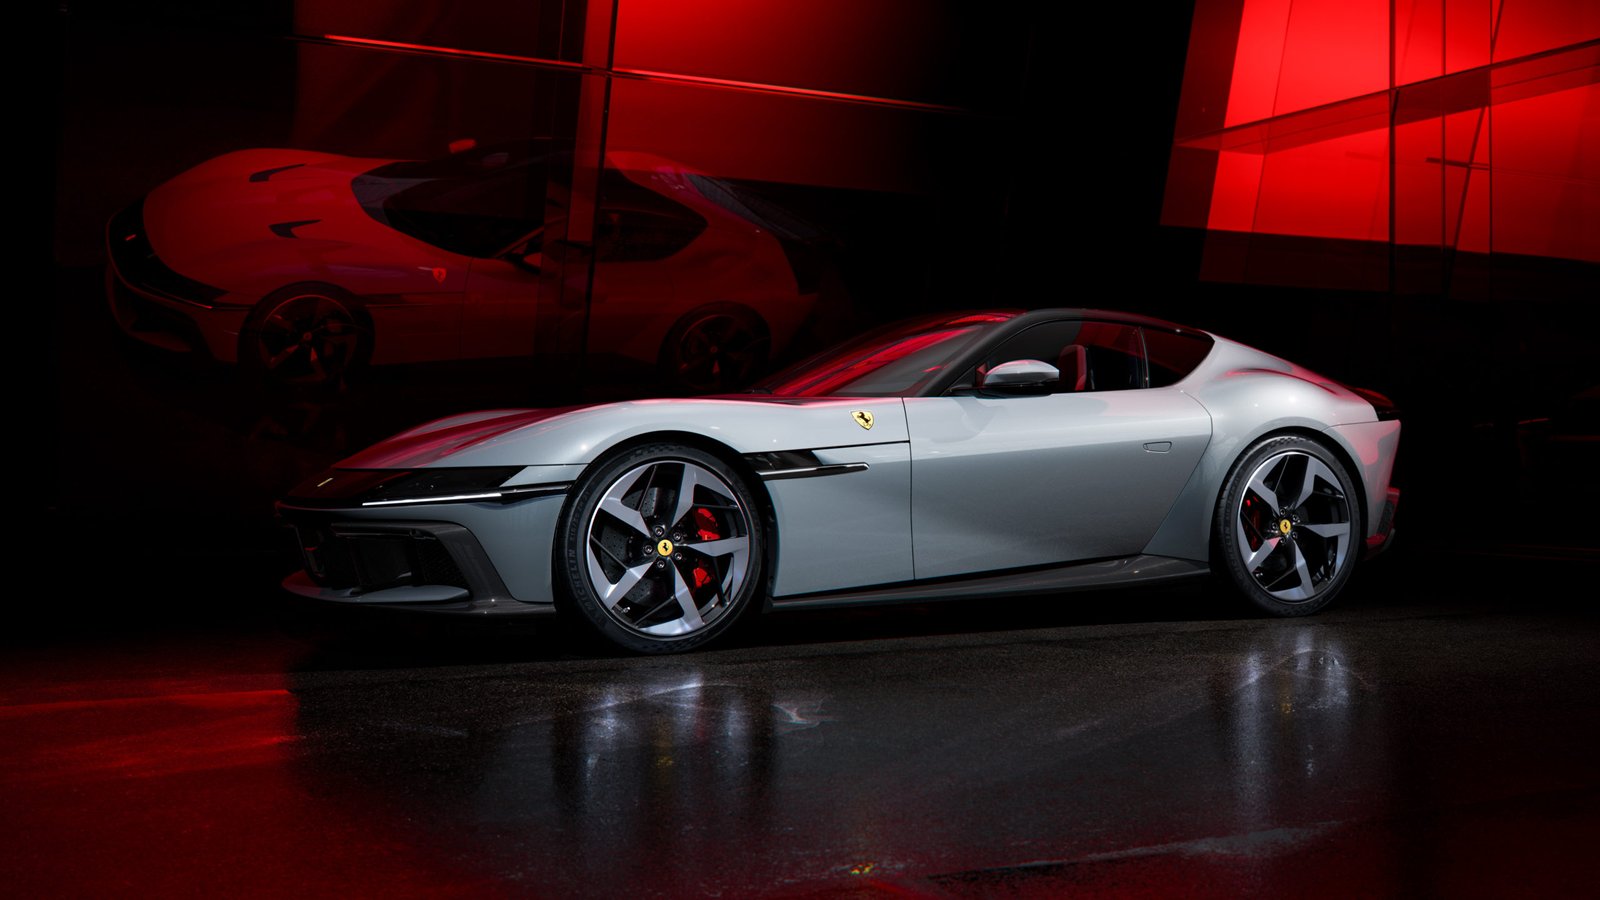 New_Ferrari_V12_ext_05_Design_white_media